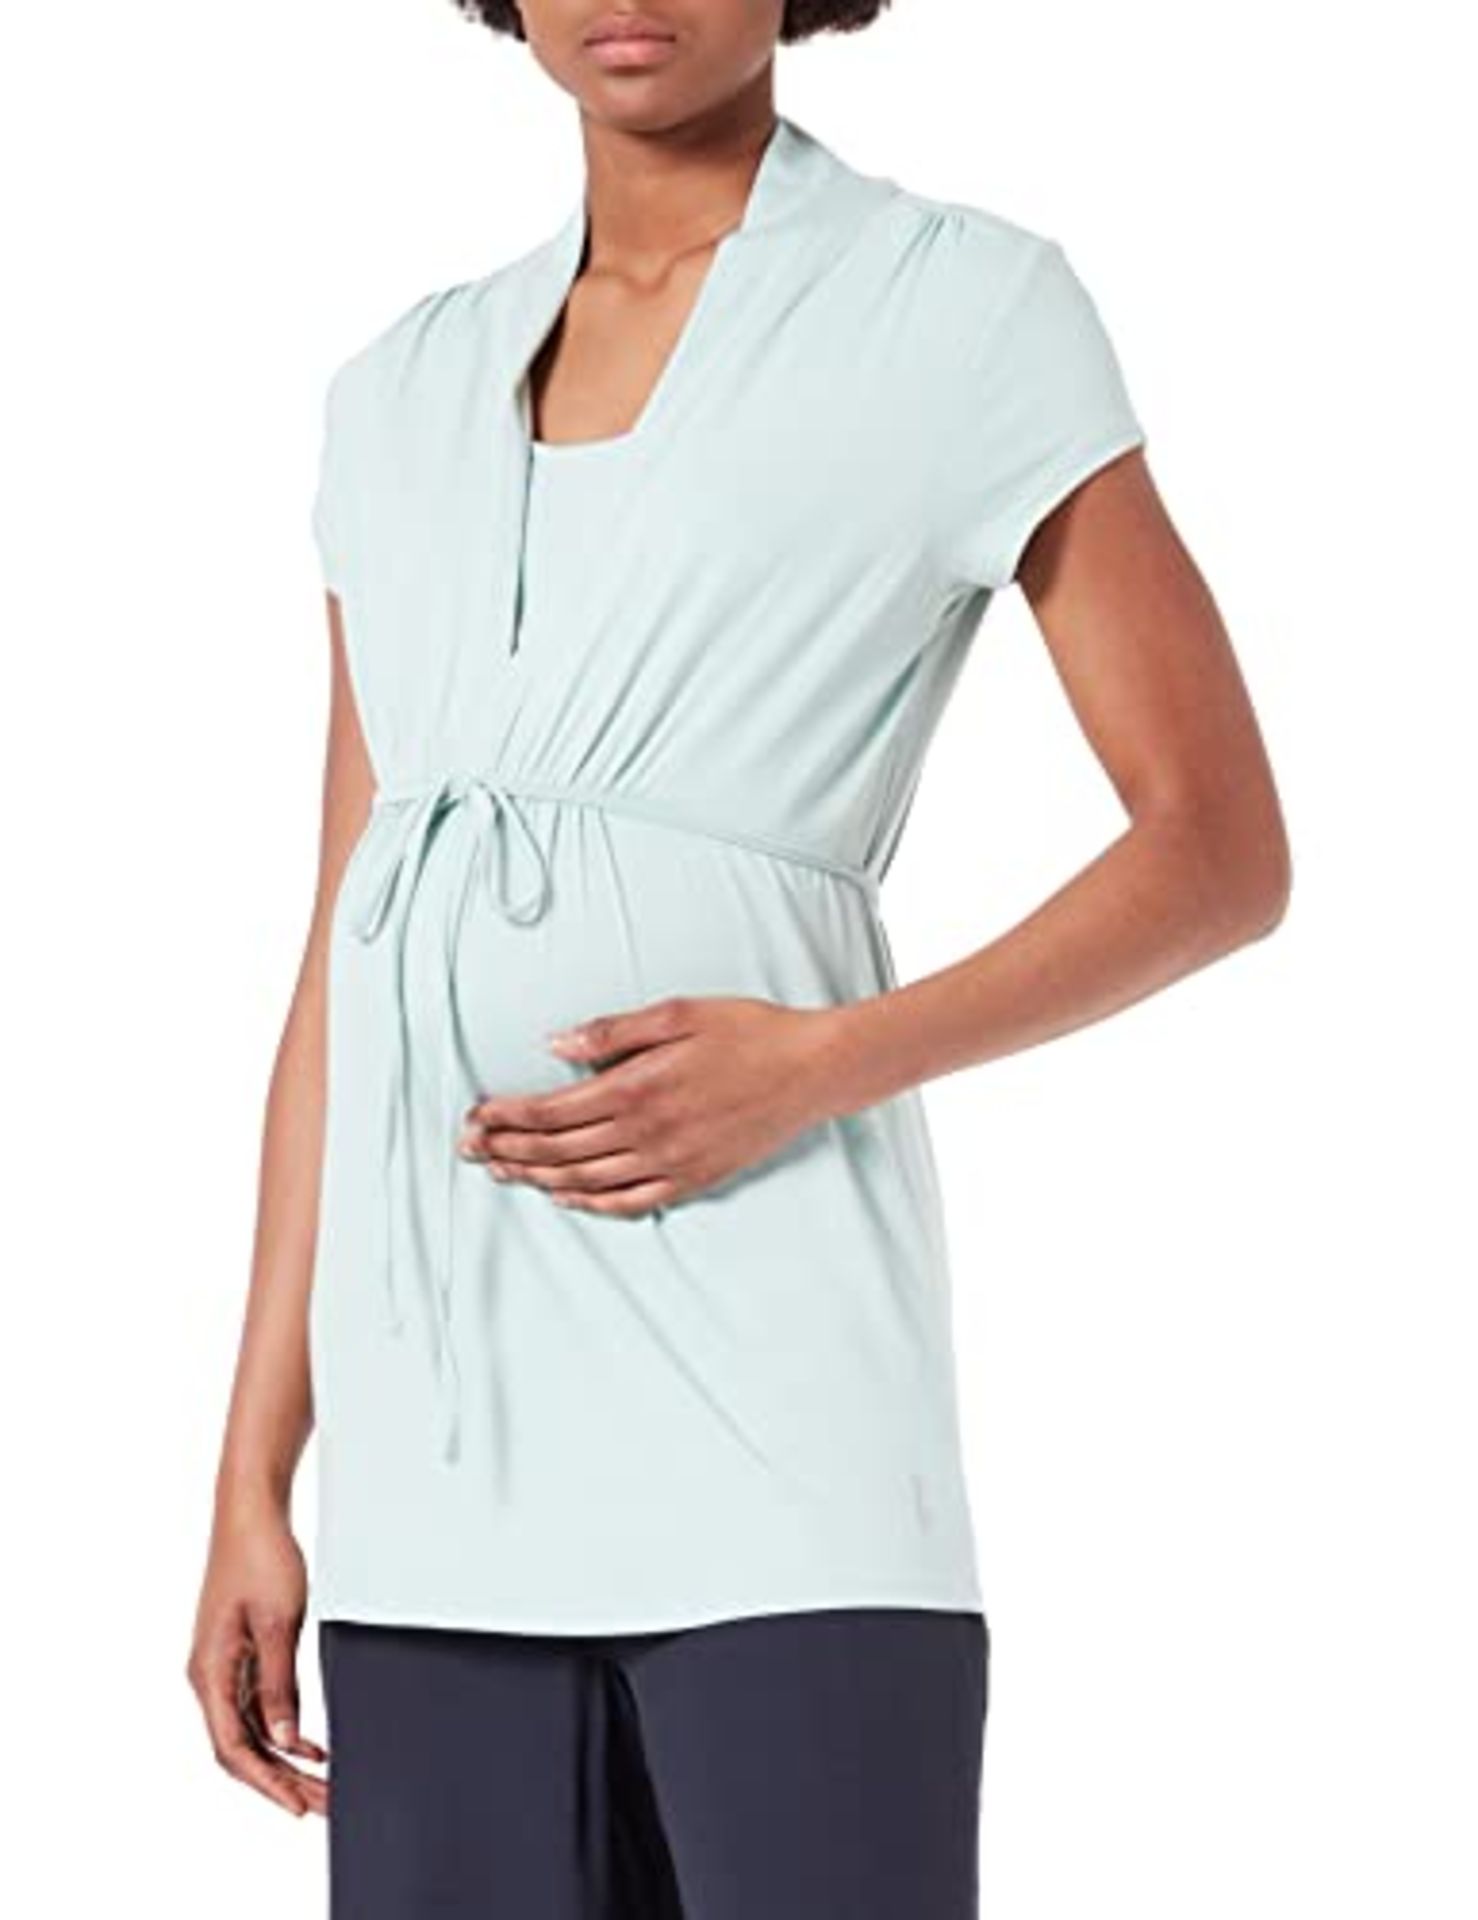 Esprit Maternity Women's T-Shirt Nursing Short Sleeve, Pale Mint-356, M